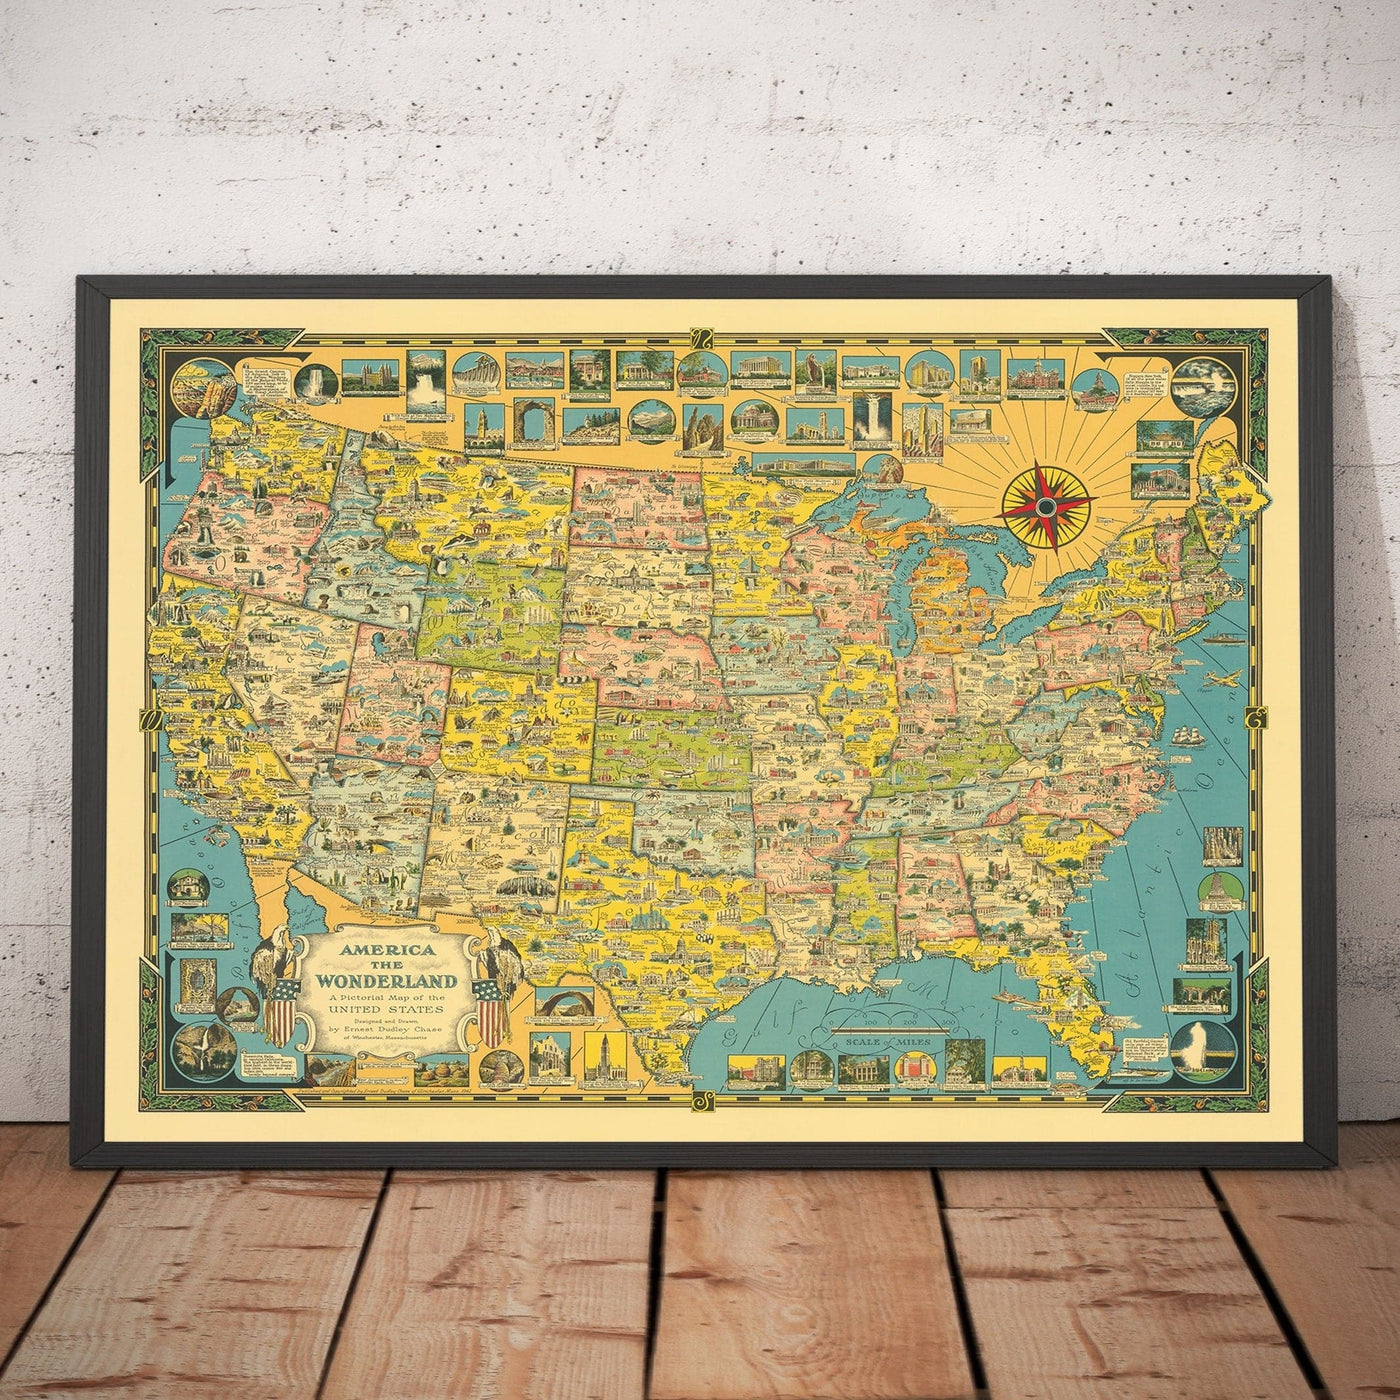 Antiguo mapa pictórico de EE.UU., 1941 por E. Chase - "América el País de las Maravillas" - Lugares de interés ilustrados, maravillas naturales